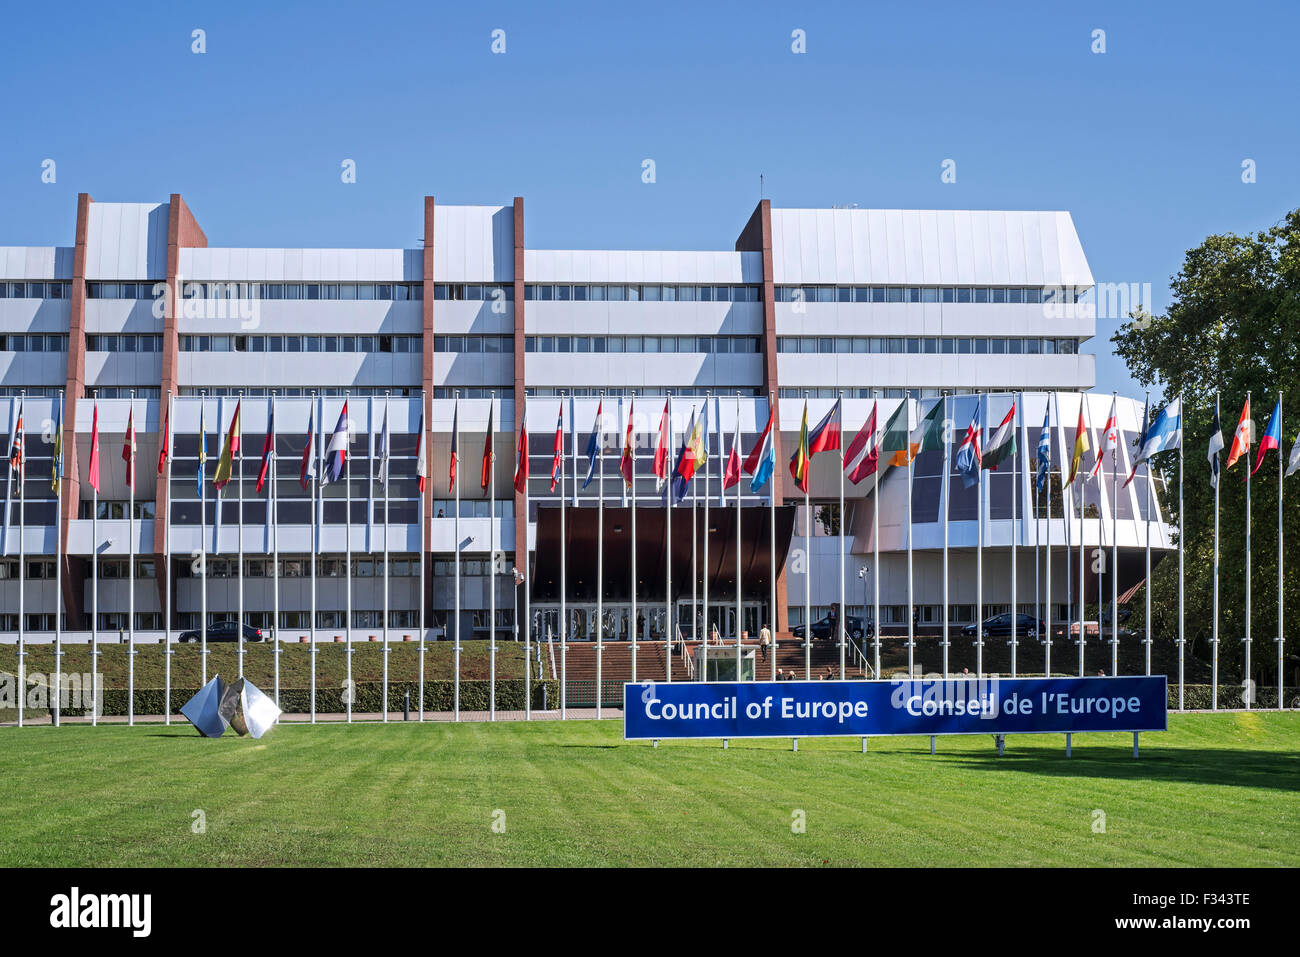 Sede del Consejo de Europa / CoE / Conseil de l'Europe en el Palais de l'Europe en Estrasburgo, Francia Foto de stock